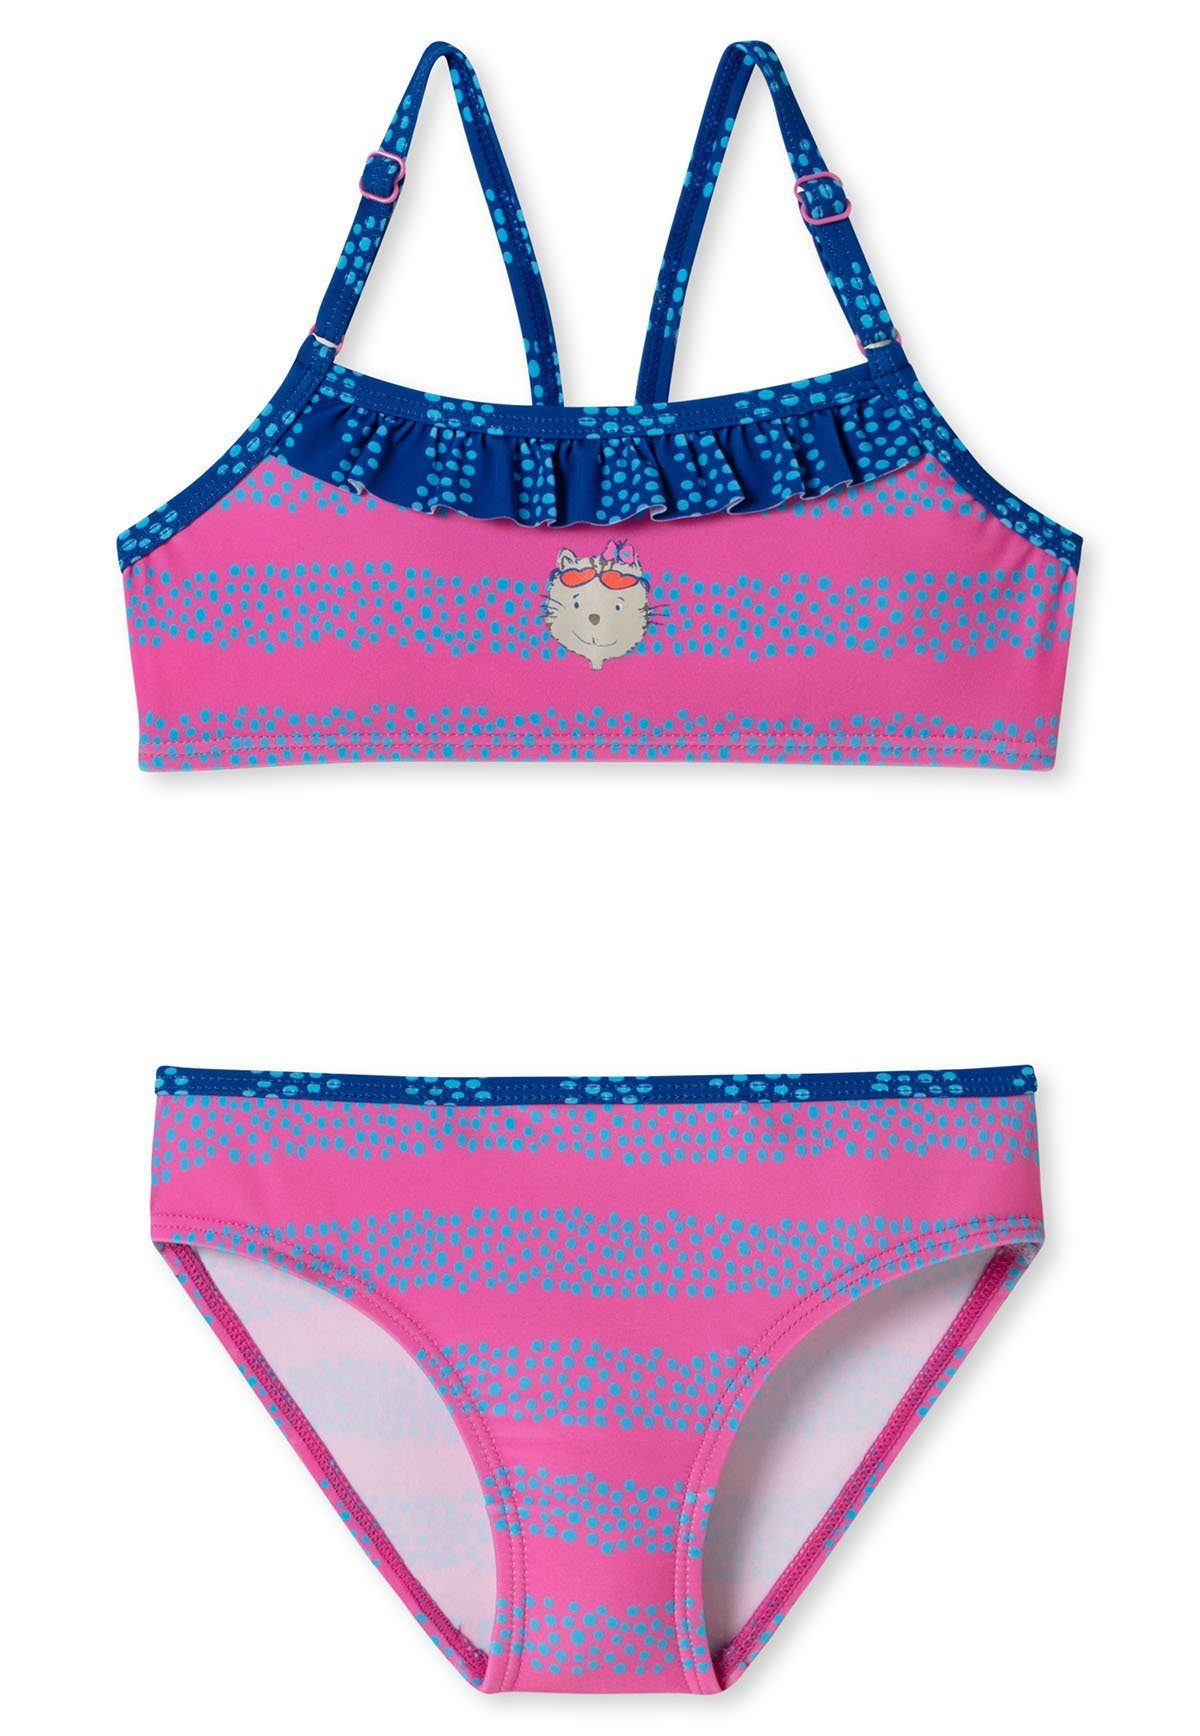 Schiesser Badeanzug Mädchen Bustier-Bikini Set - Bade-Zweiteiler Pink/Blau